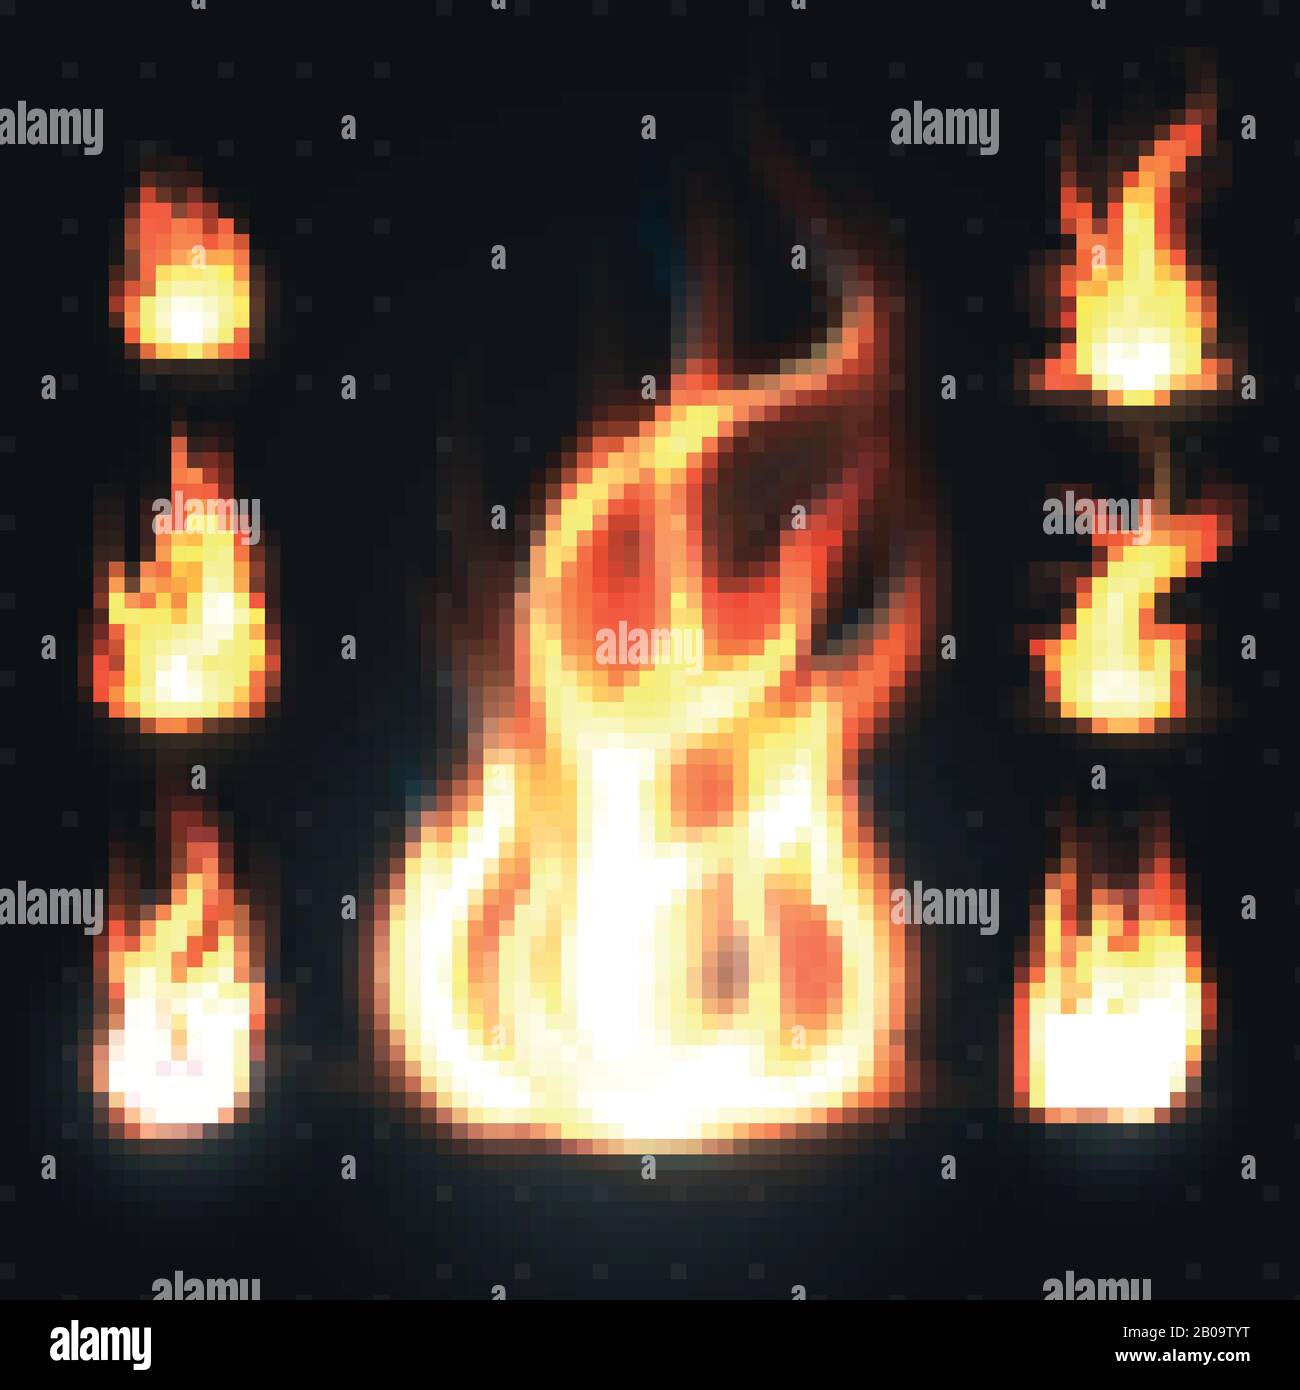 Realistische orangefarbene und rote Feuerflammen, Feuerbälle isoliert auf transparenter Hintergrundvektorillustration. Sammlung von orangefarbenem Feuer, Flammspritzen Stock Vektor